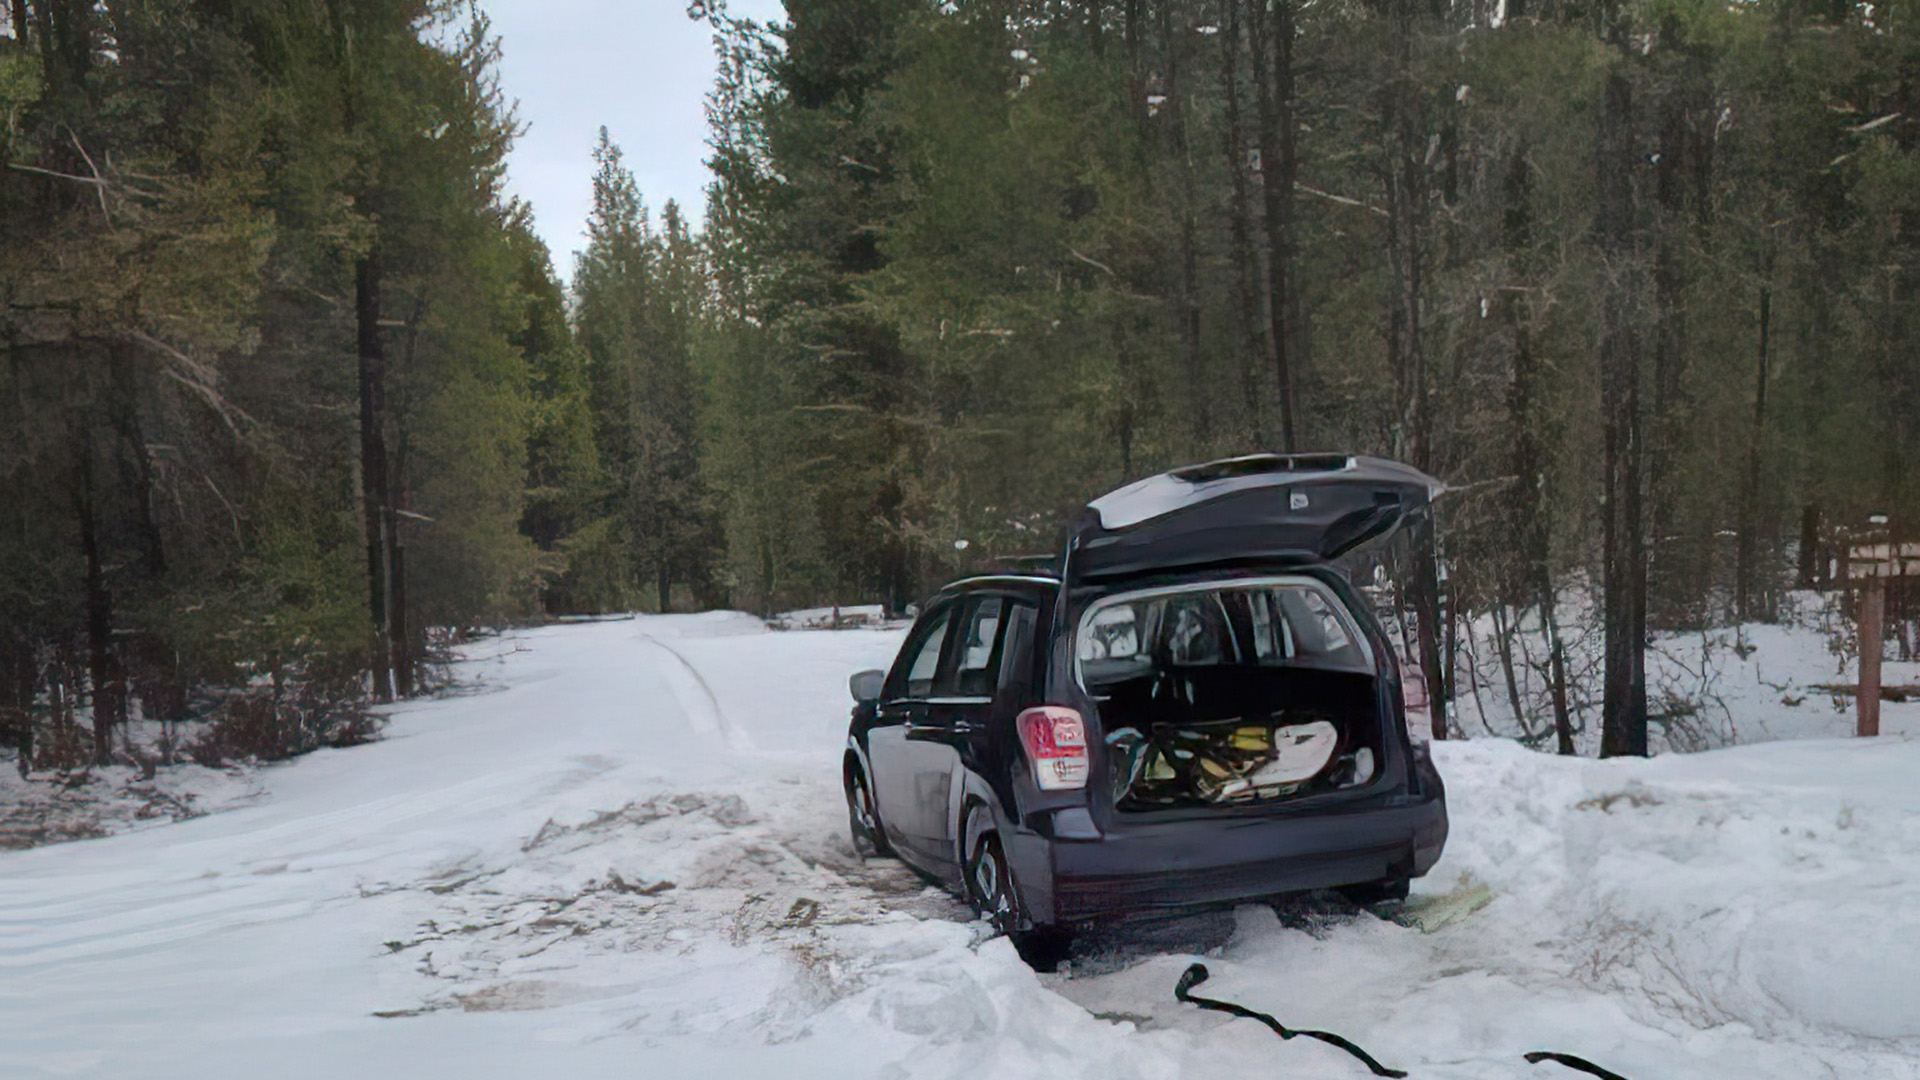 Subaru stuck in the snow